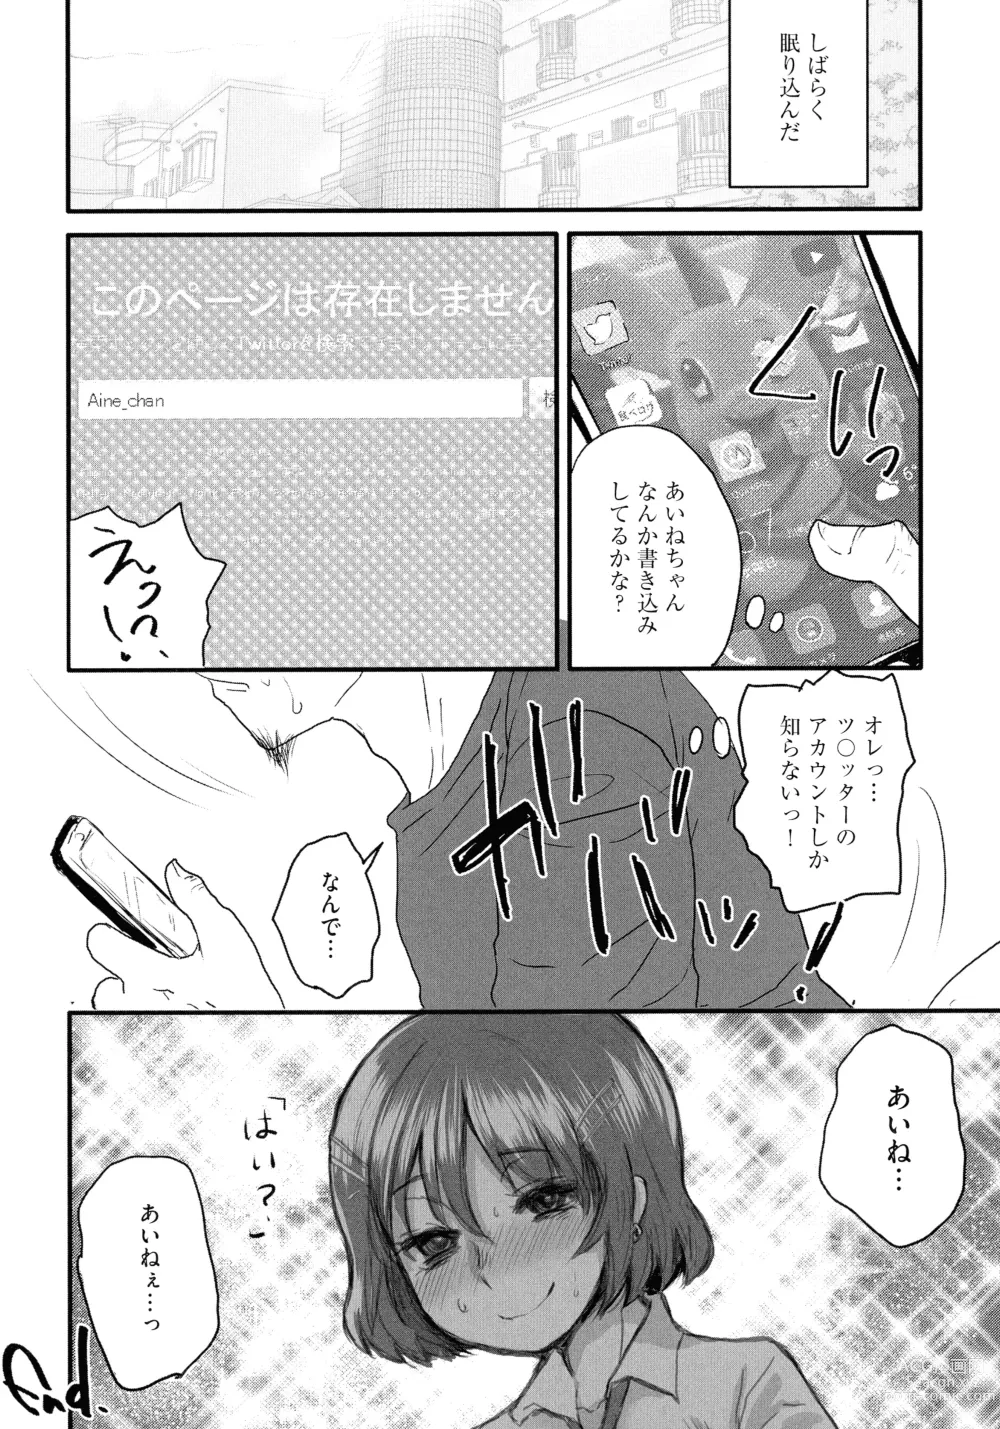 Page 22 of manga Subetega Mesu ni Naru